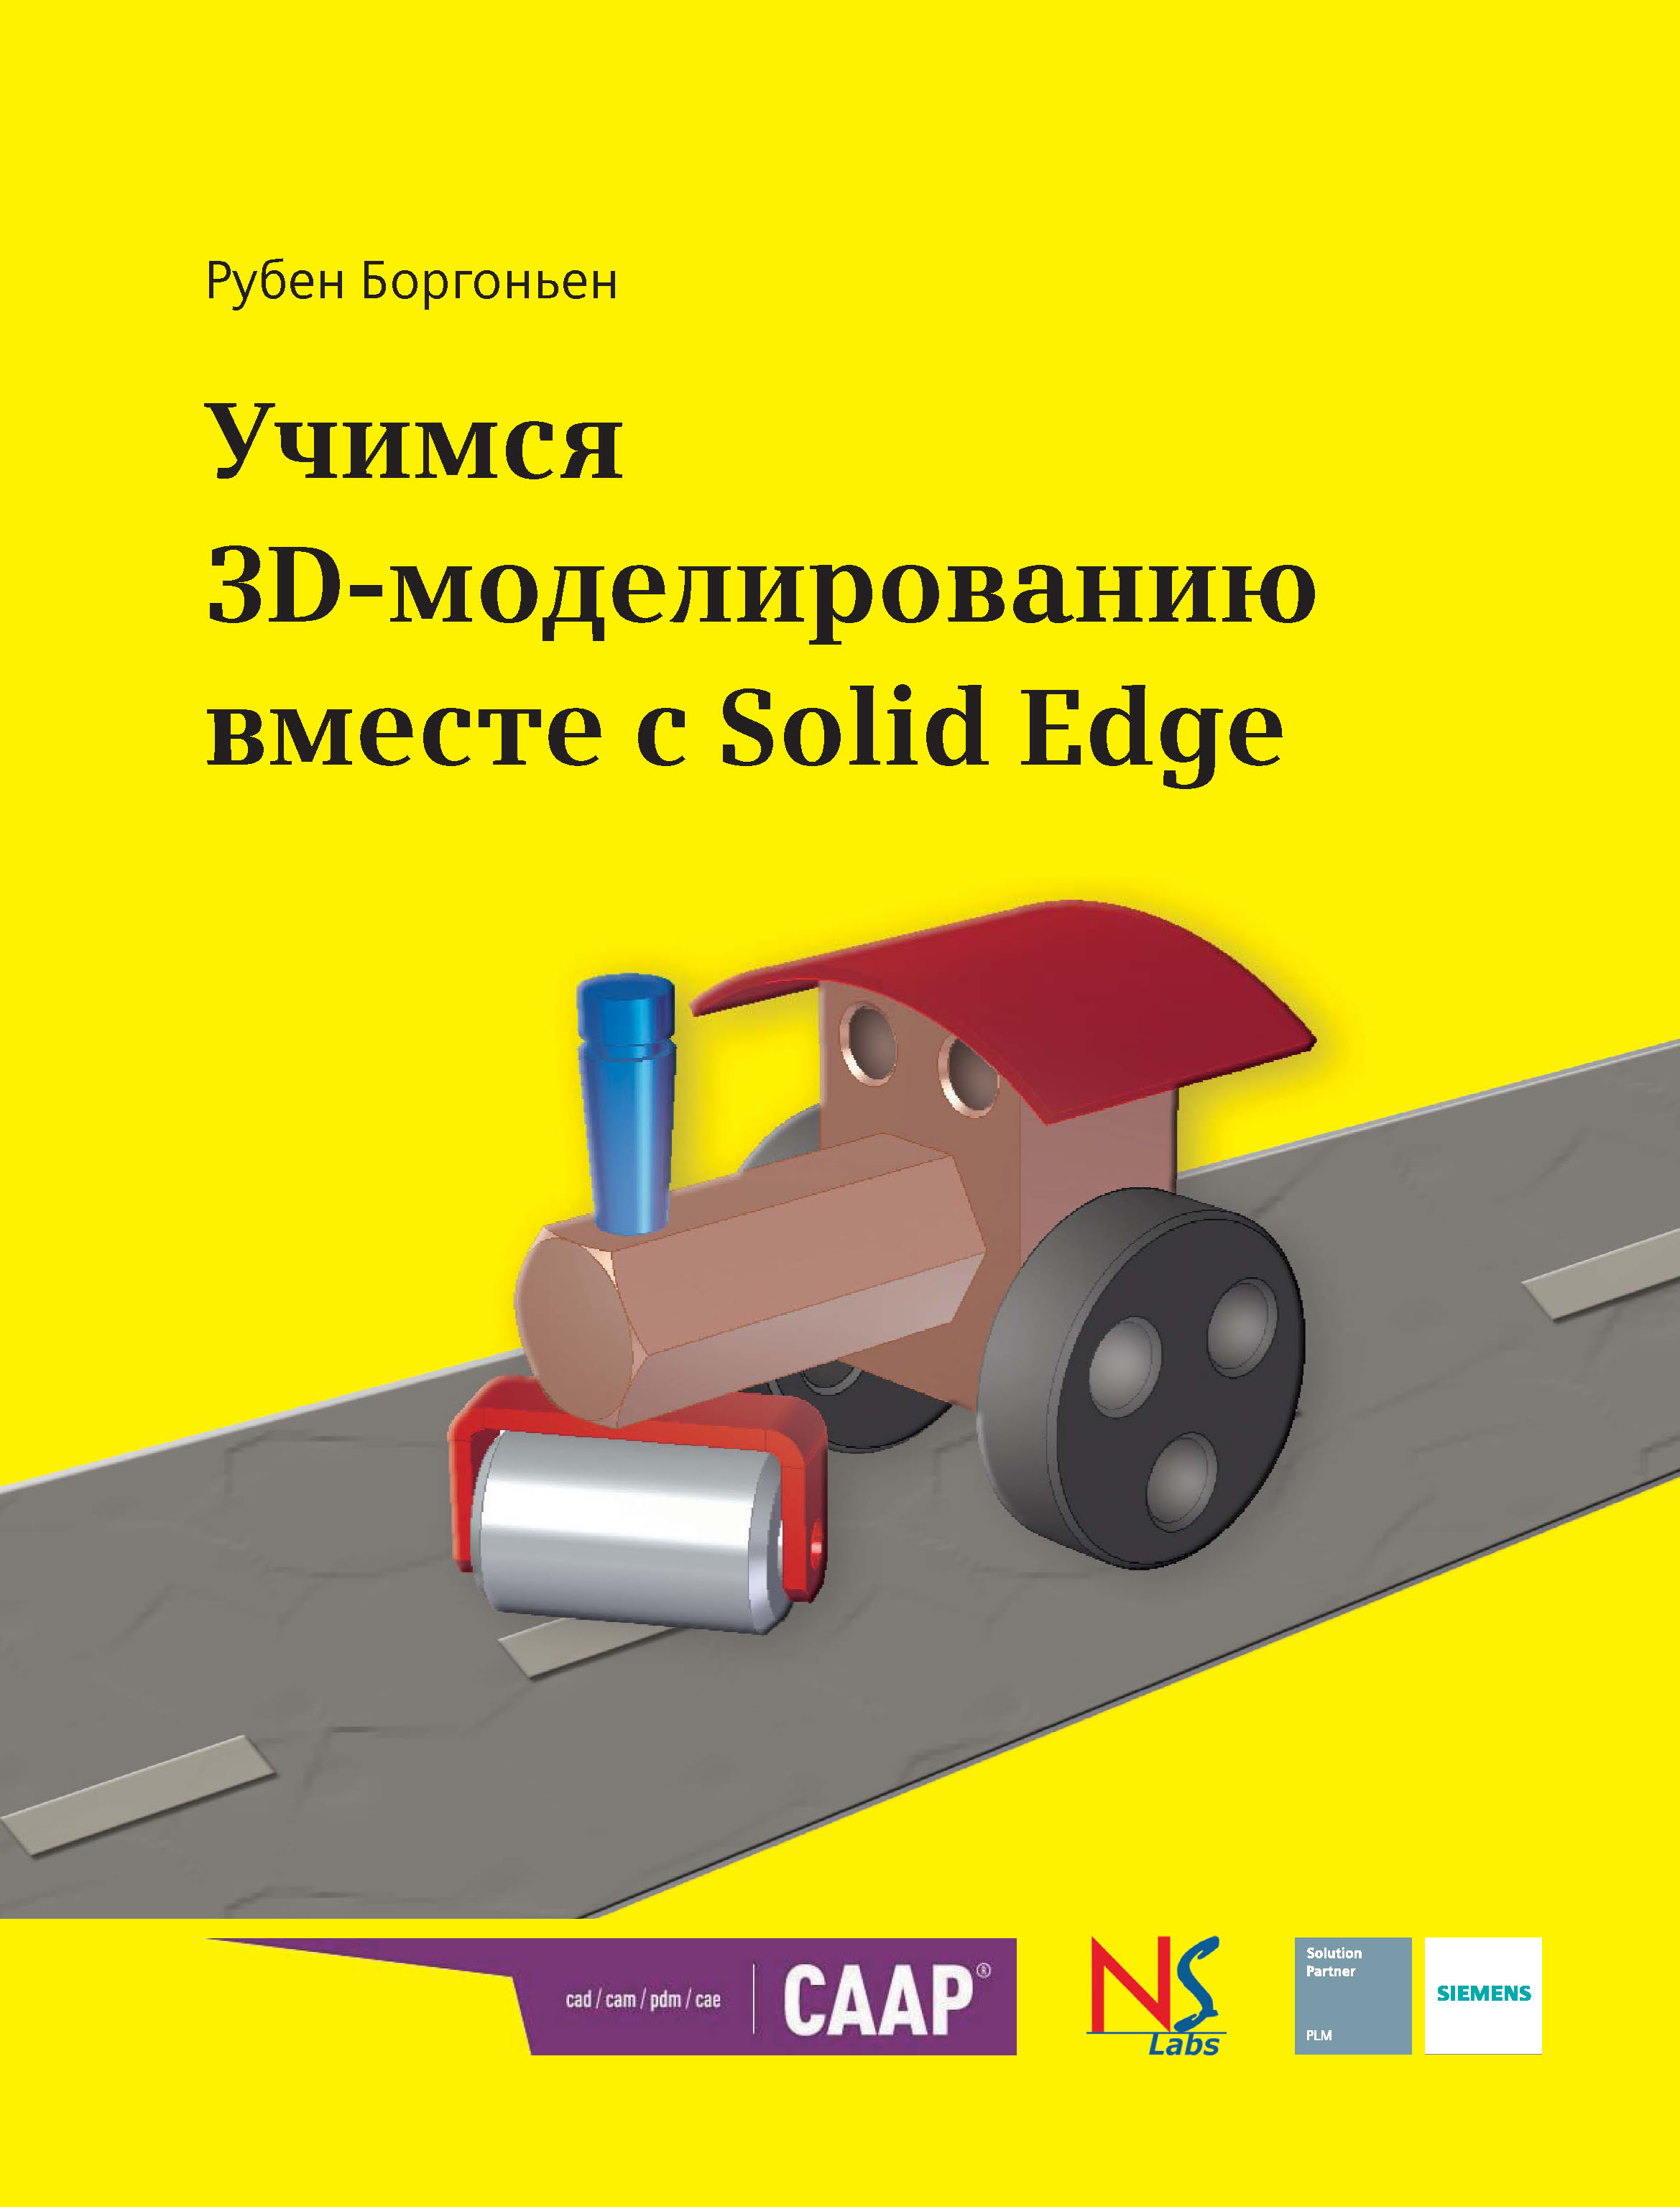 Книга  Учимся 3D-моделированию вместе с Solid Edge созданная Рубен Боргоньен может относится к жанру зарубежная компьютерная литература, зарубежная образовательная литература, программы, проектирование. Стоимость электронной книги Учимся 3D-моделированию вместе с Solid Edge с идентификатором 45707239 составляет 790.00 руб.